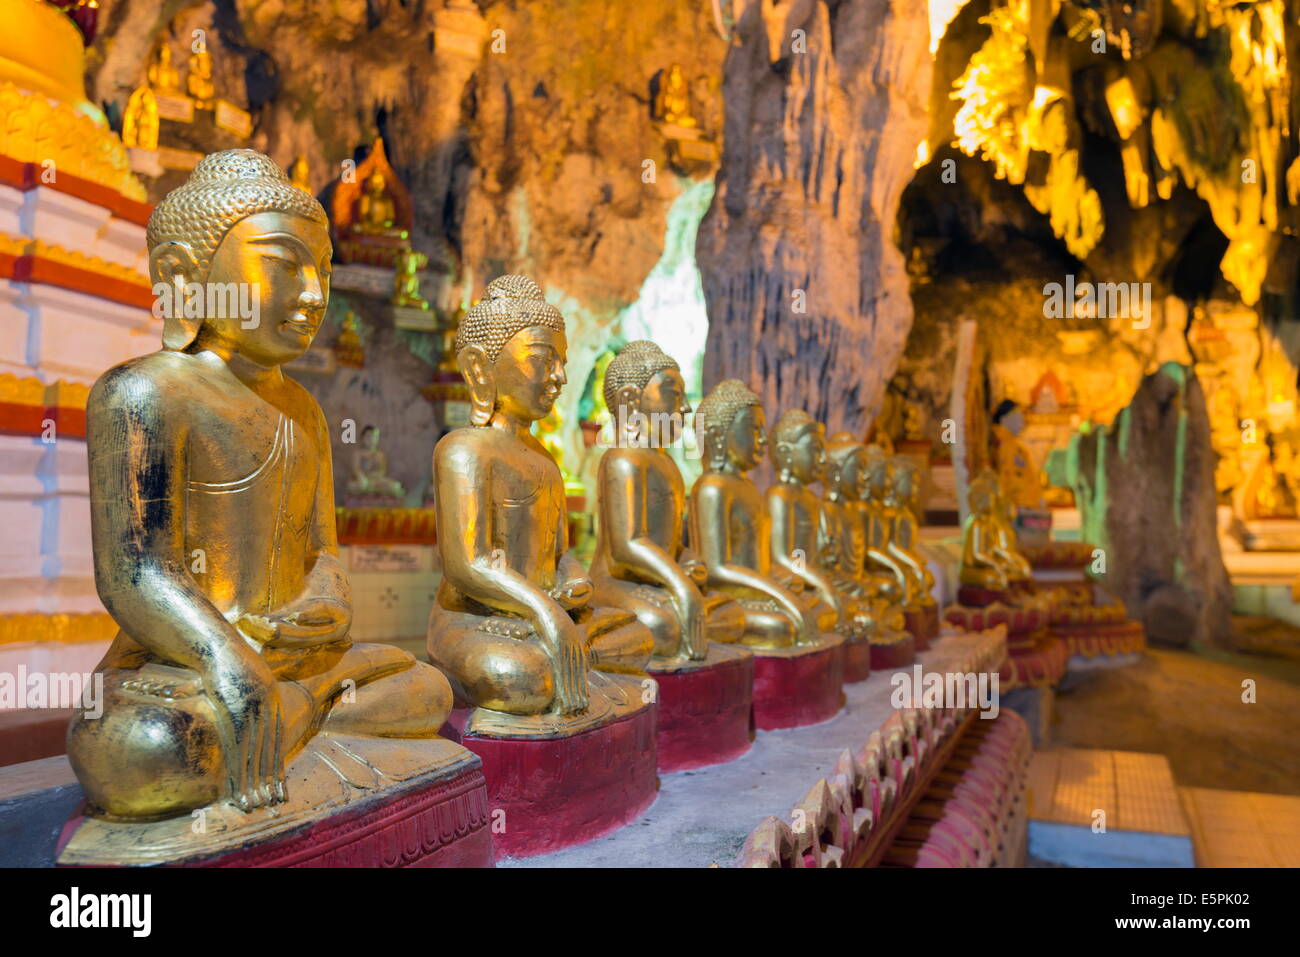 Statue di Buddha in ingresso a Shwe Oo Min grotta naturale Pagoda, Pindaya, Myanmar (Birmania), Asia Foto Stock